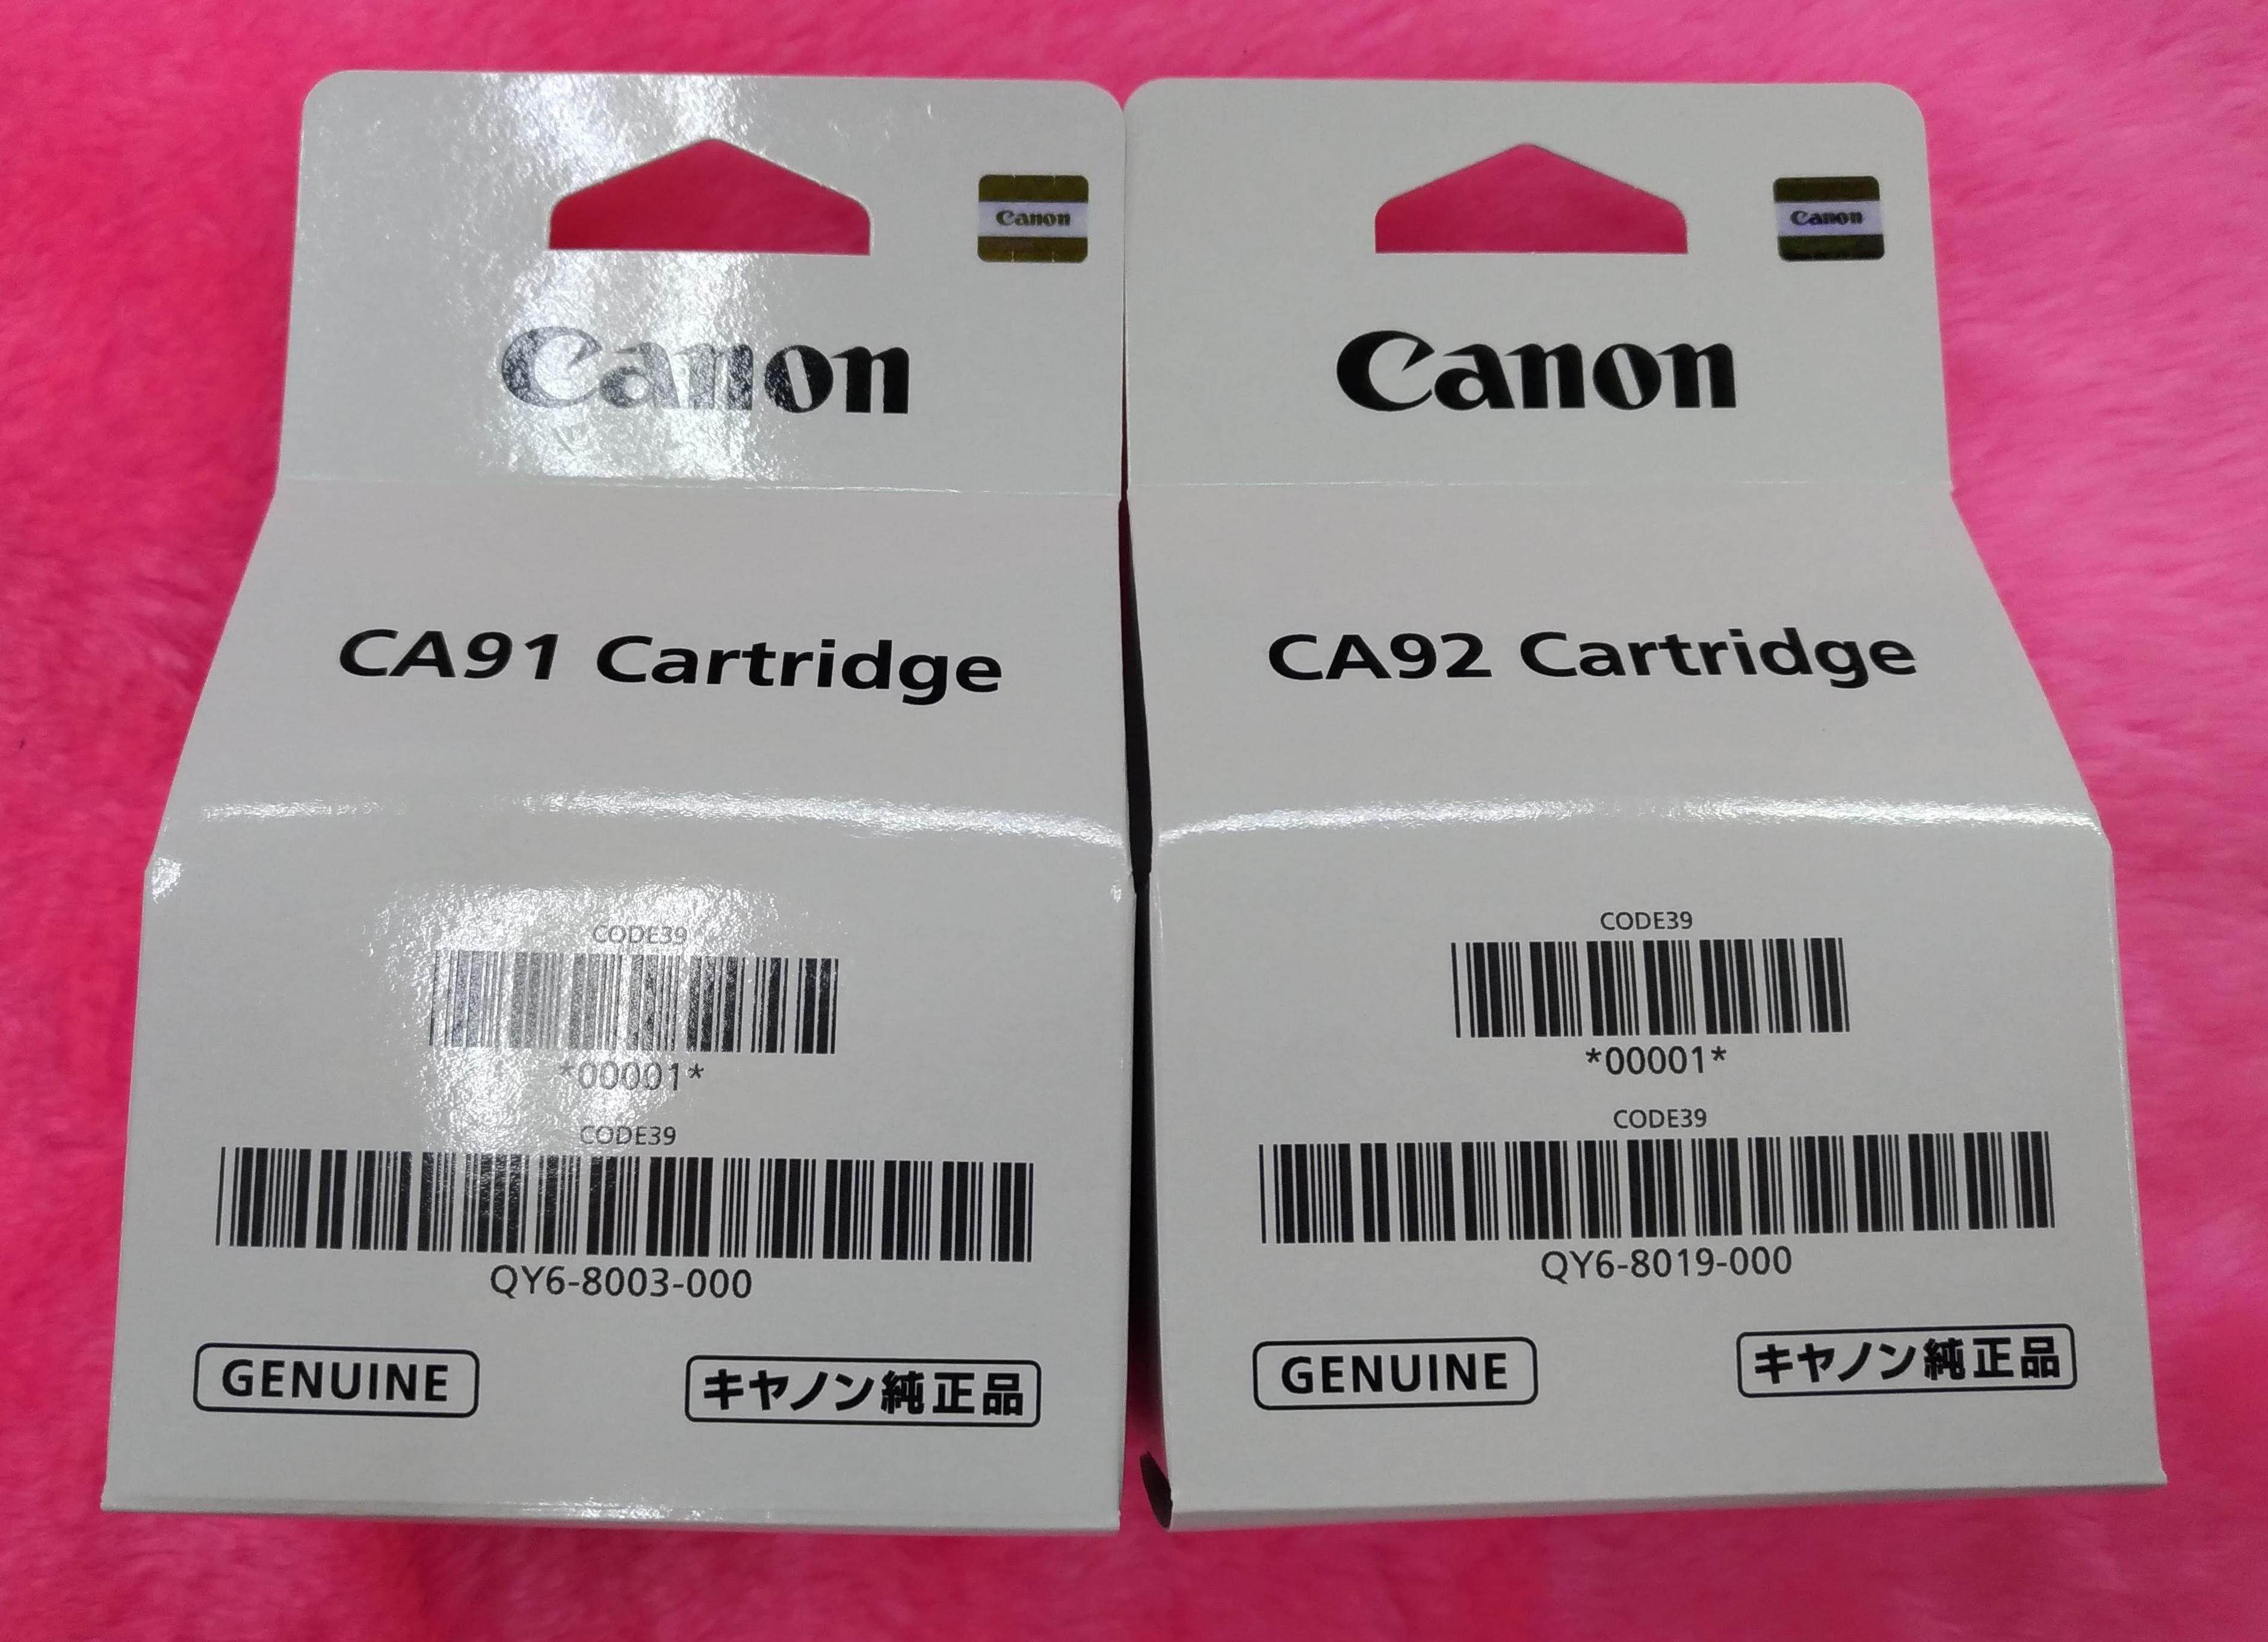 หัวพิมพ์ดำแท้ CA91 และ หัวพิมพ์สีแท้ CA92 สำหรับรุ่น CANON G1000,G2000,G3000,G4000 และ CANON G1010,G2010,G3010,G4010